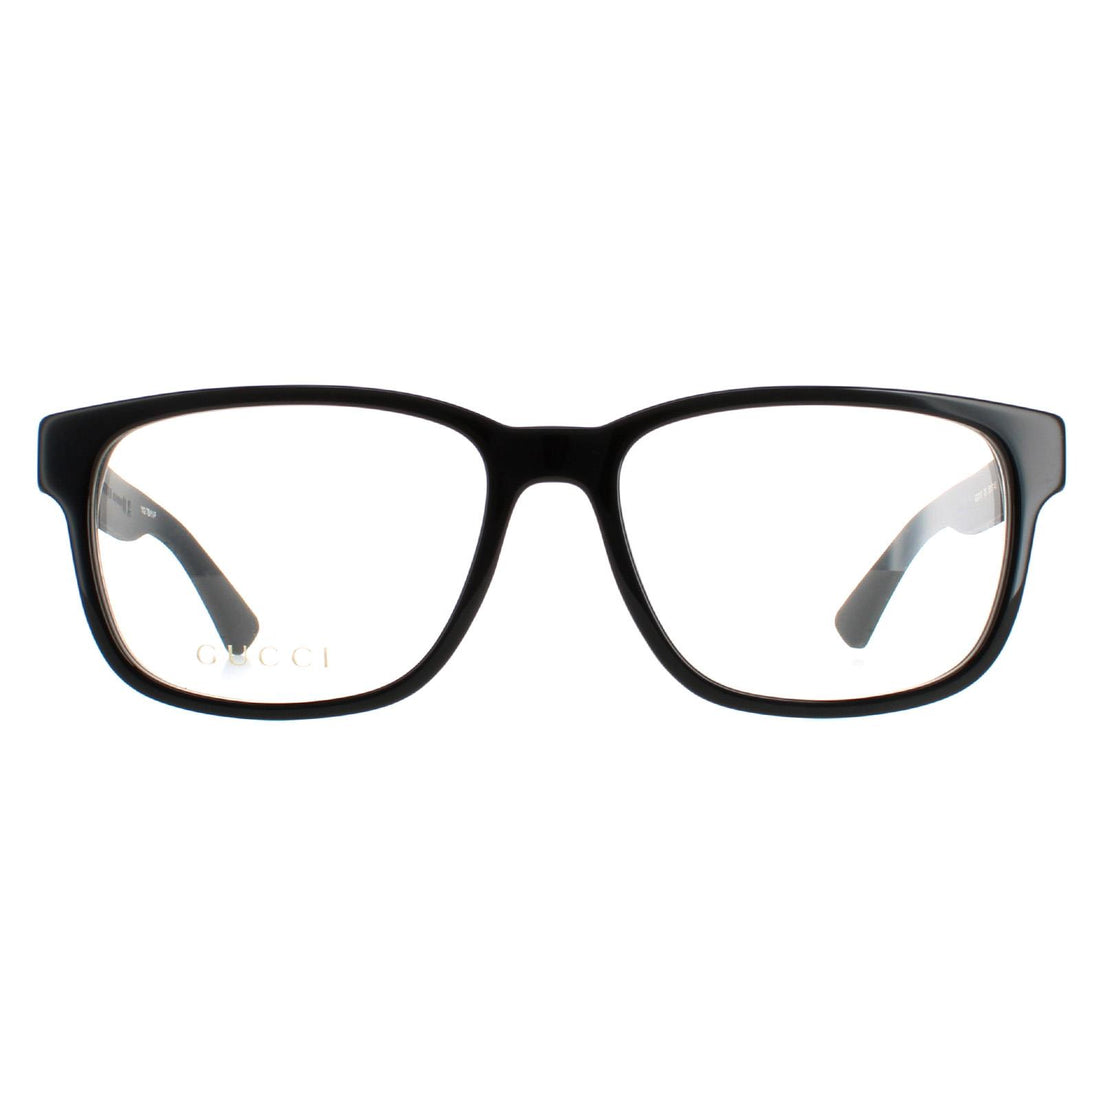 Gucci GG0011O Glasses Frames Black